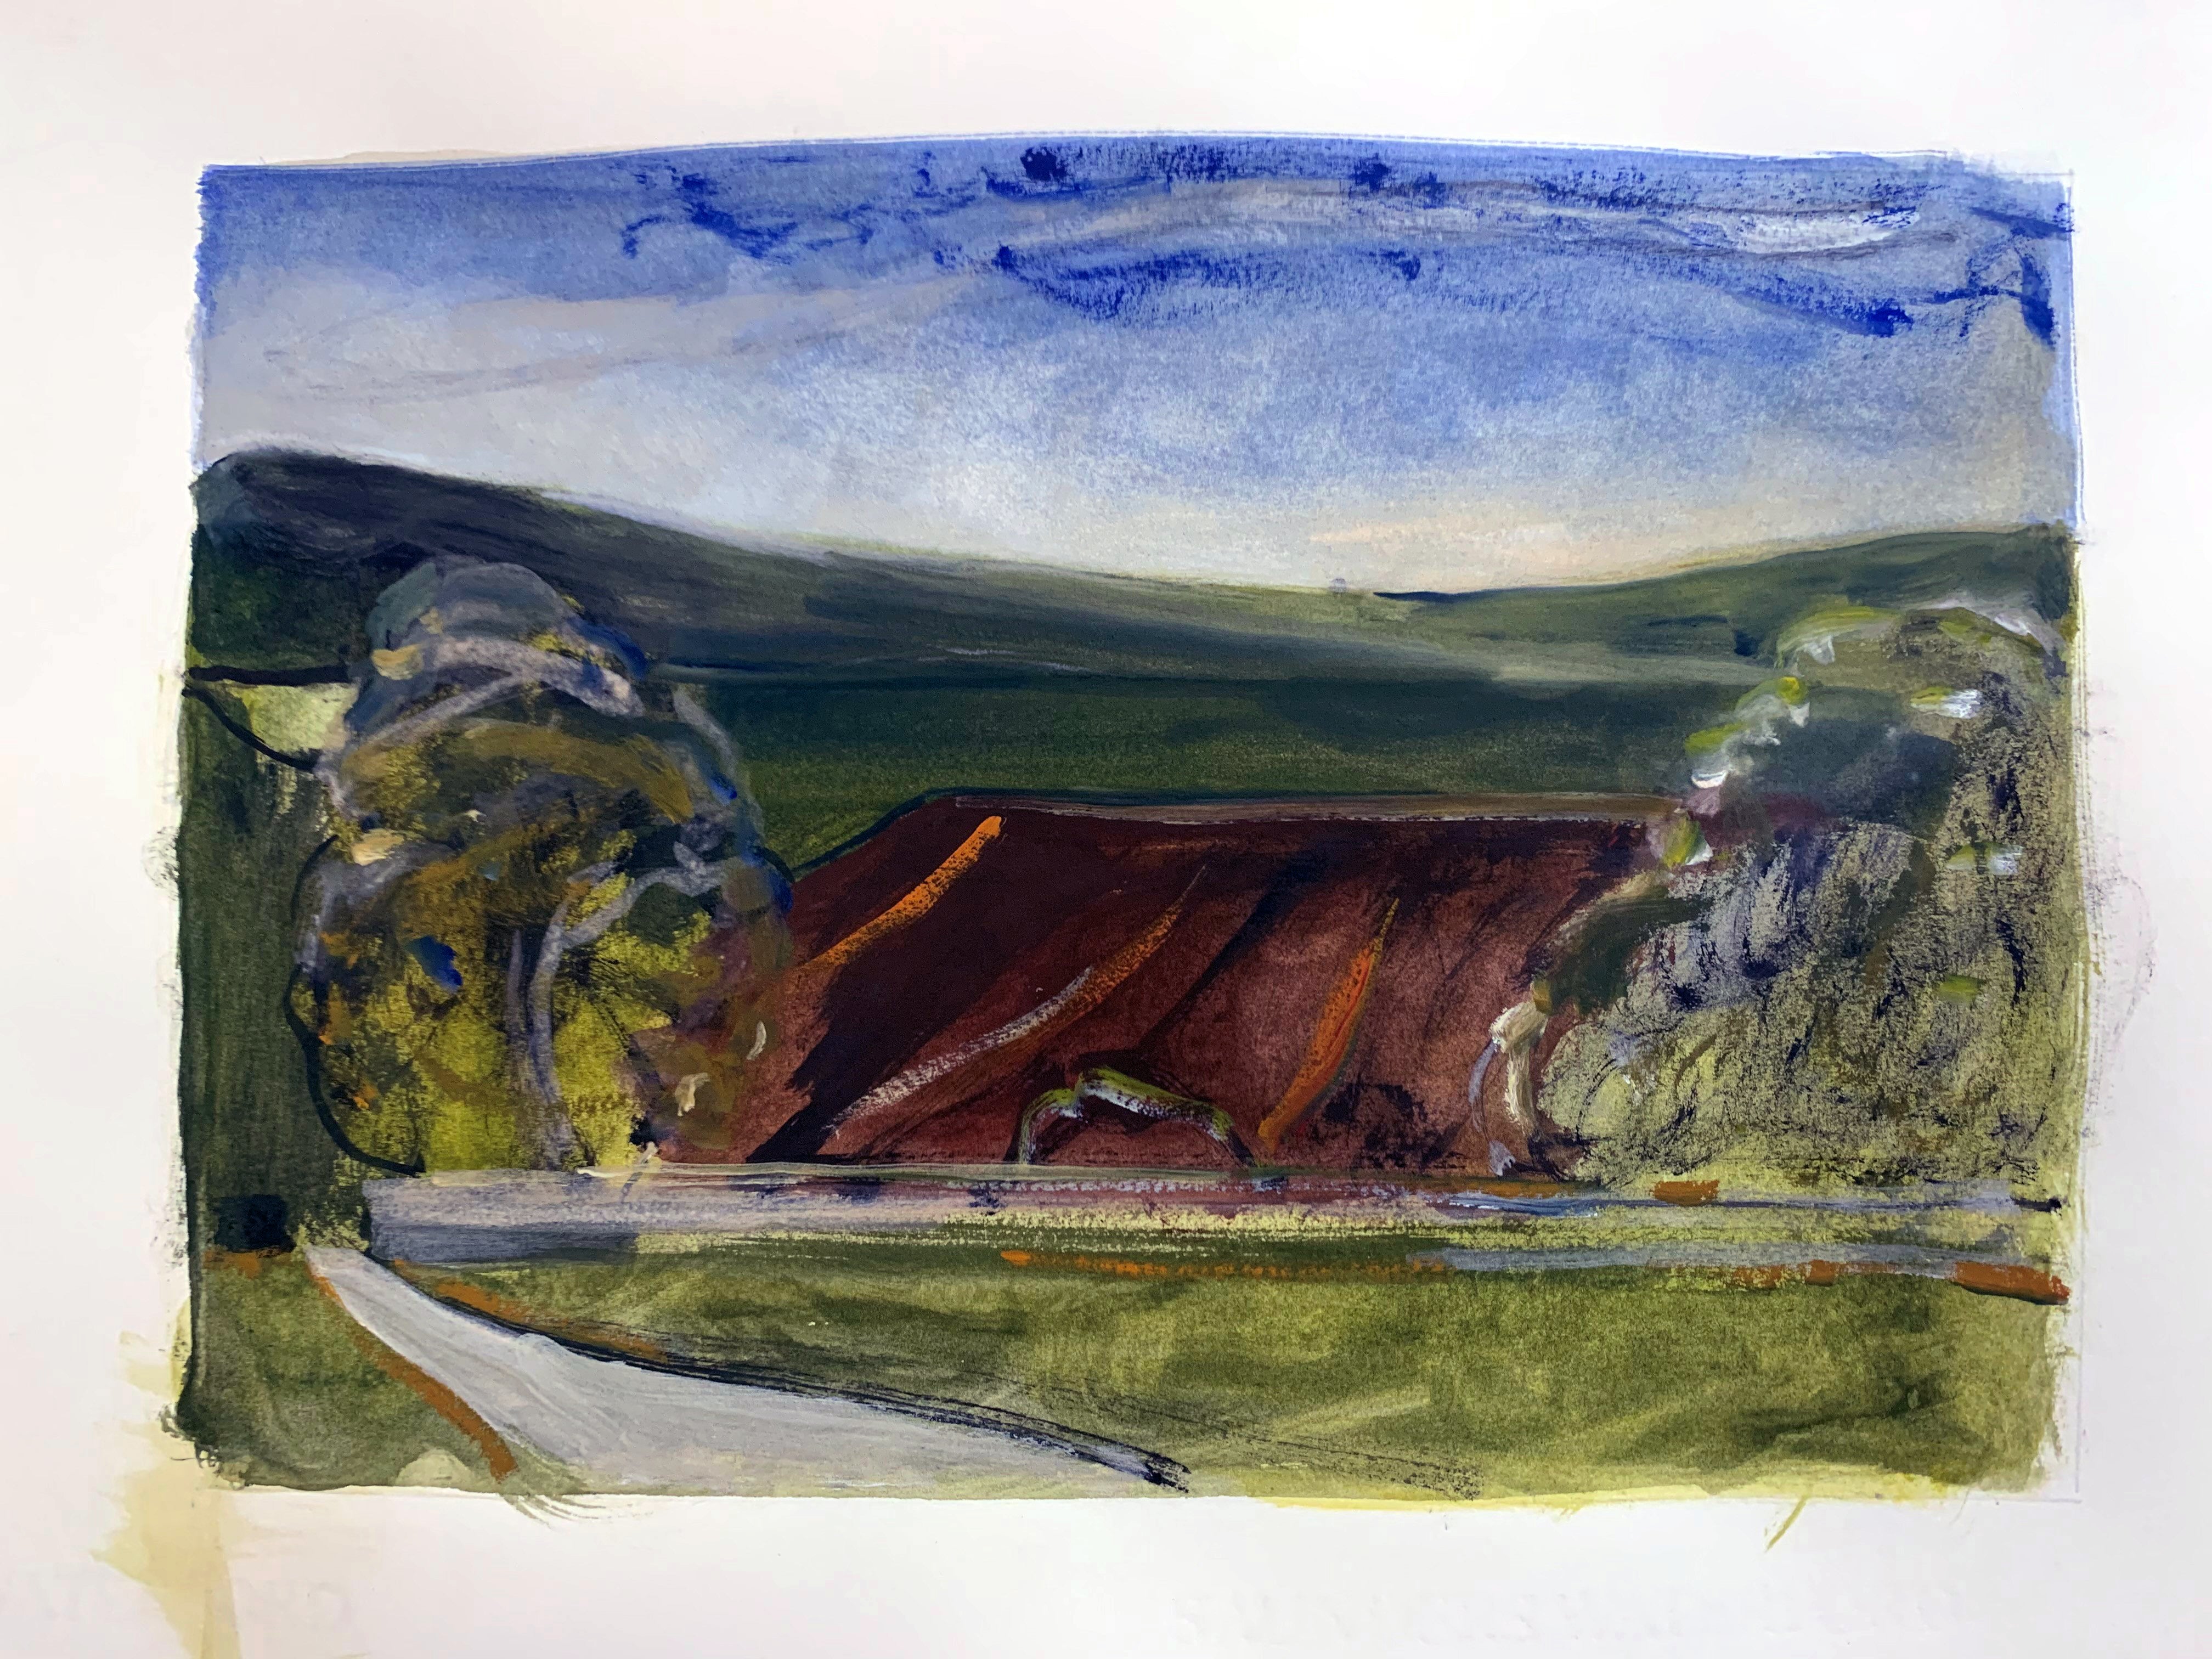 Peter Ashton Jones 'The Enclosure', 2021 Watercolour, gouache, Indian ink on paper 21x30cm